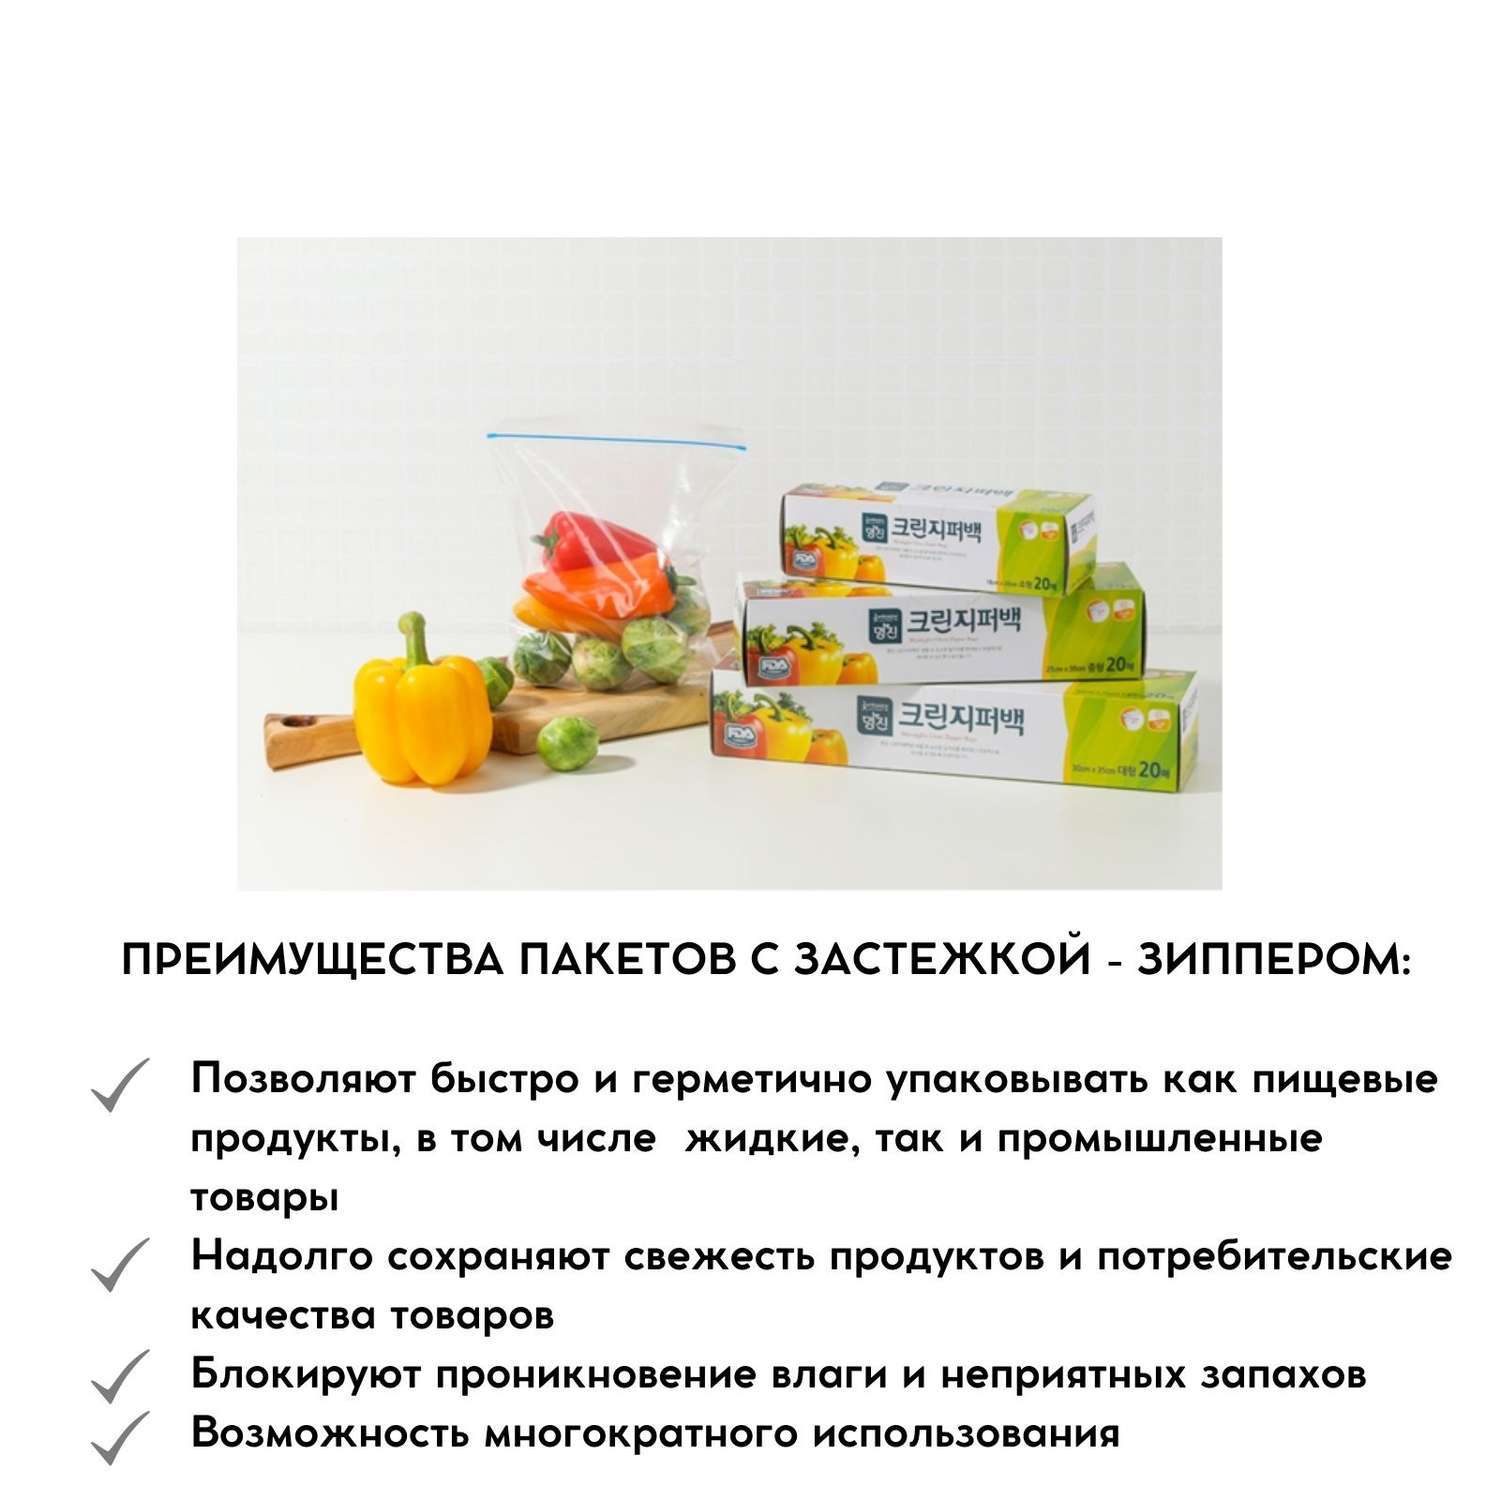 Пакеты полиэтиленовые пищевые HOME EDITION MYUNGJIN с застежкой – зиппером в коробке 18х20 см 20 шт - фото 5